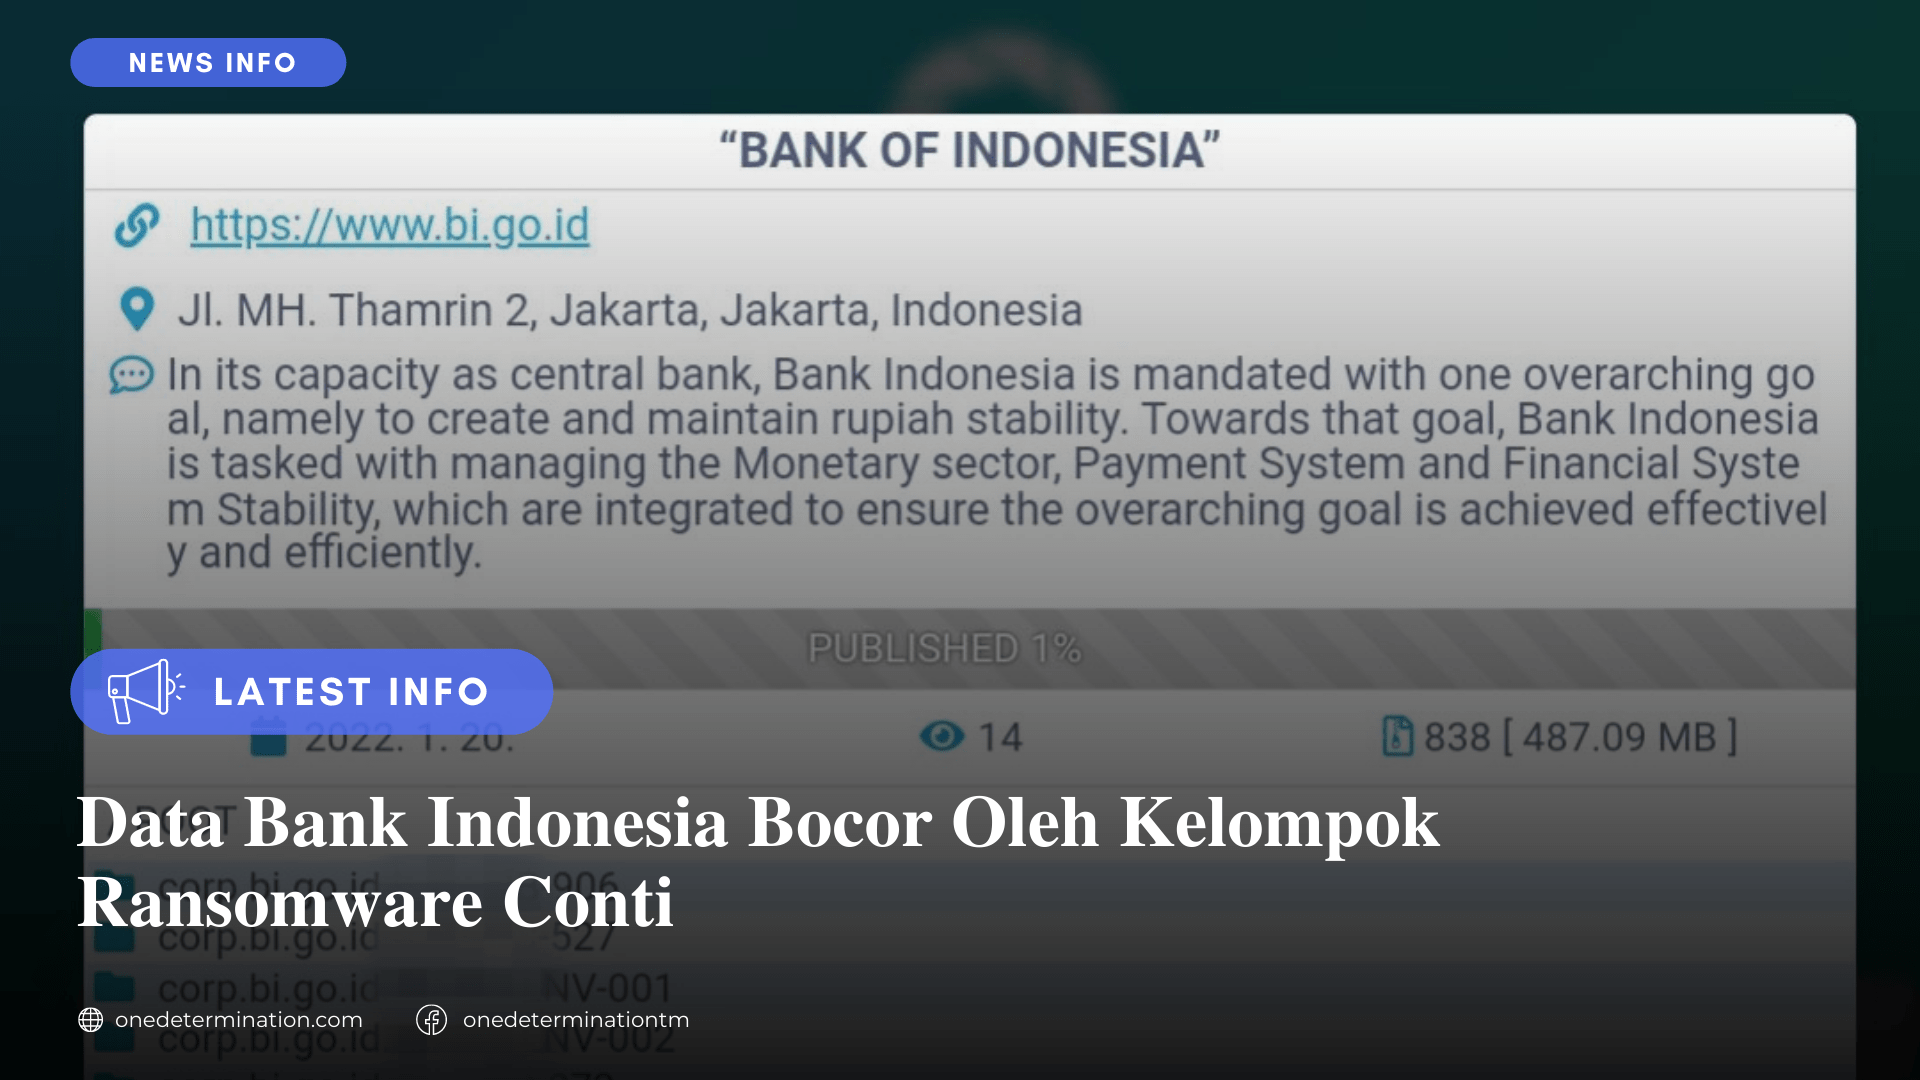 Data Bank Indonesia Bocor Oleh Kelompok Ransomware Conti